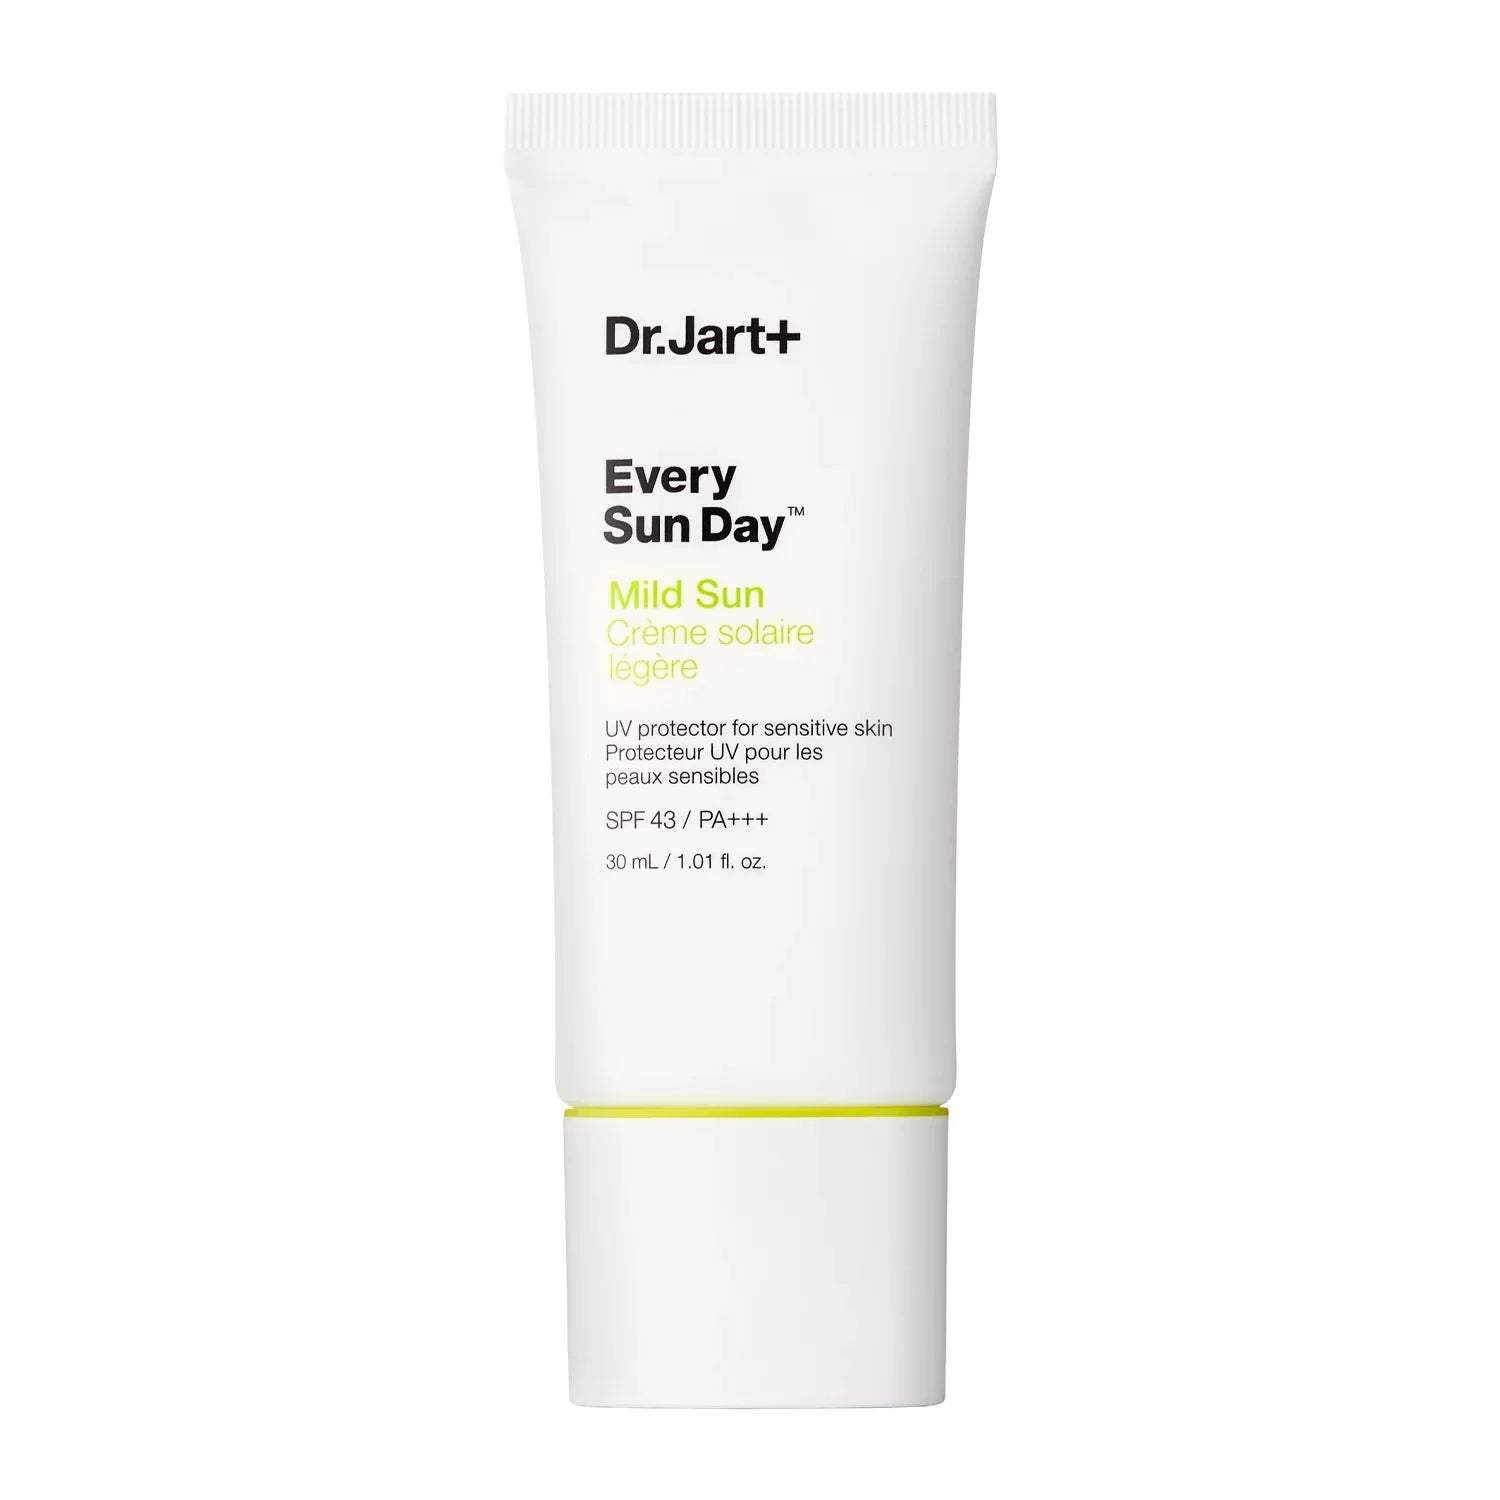 Dr. Jart+ - Every Sun Day Mild Sun SPF43/PA+++ - Daily Sunscreen - 30ml